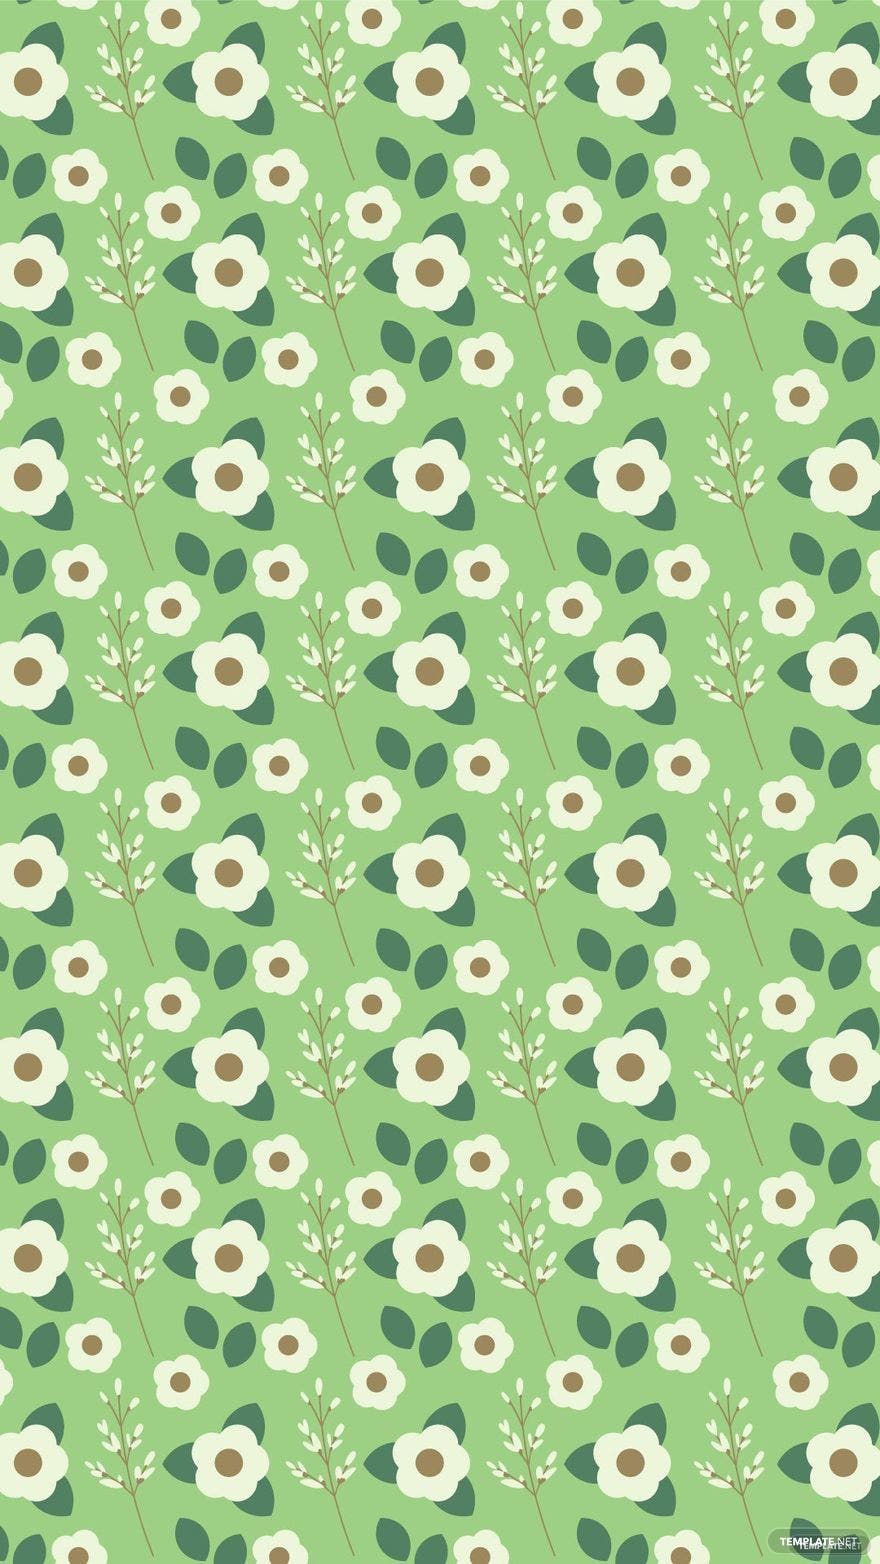 Green Floral Background Vector in Illustrator, EPS, SVG, JPG, PNG